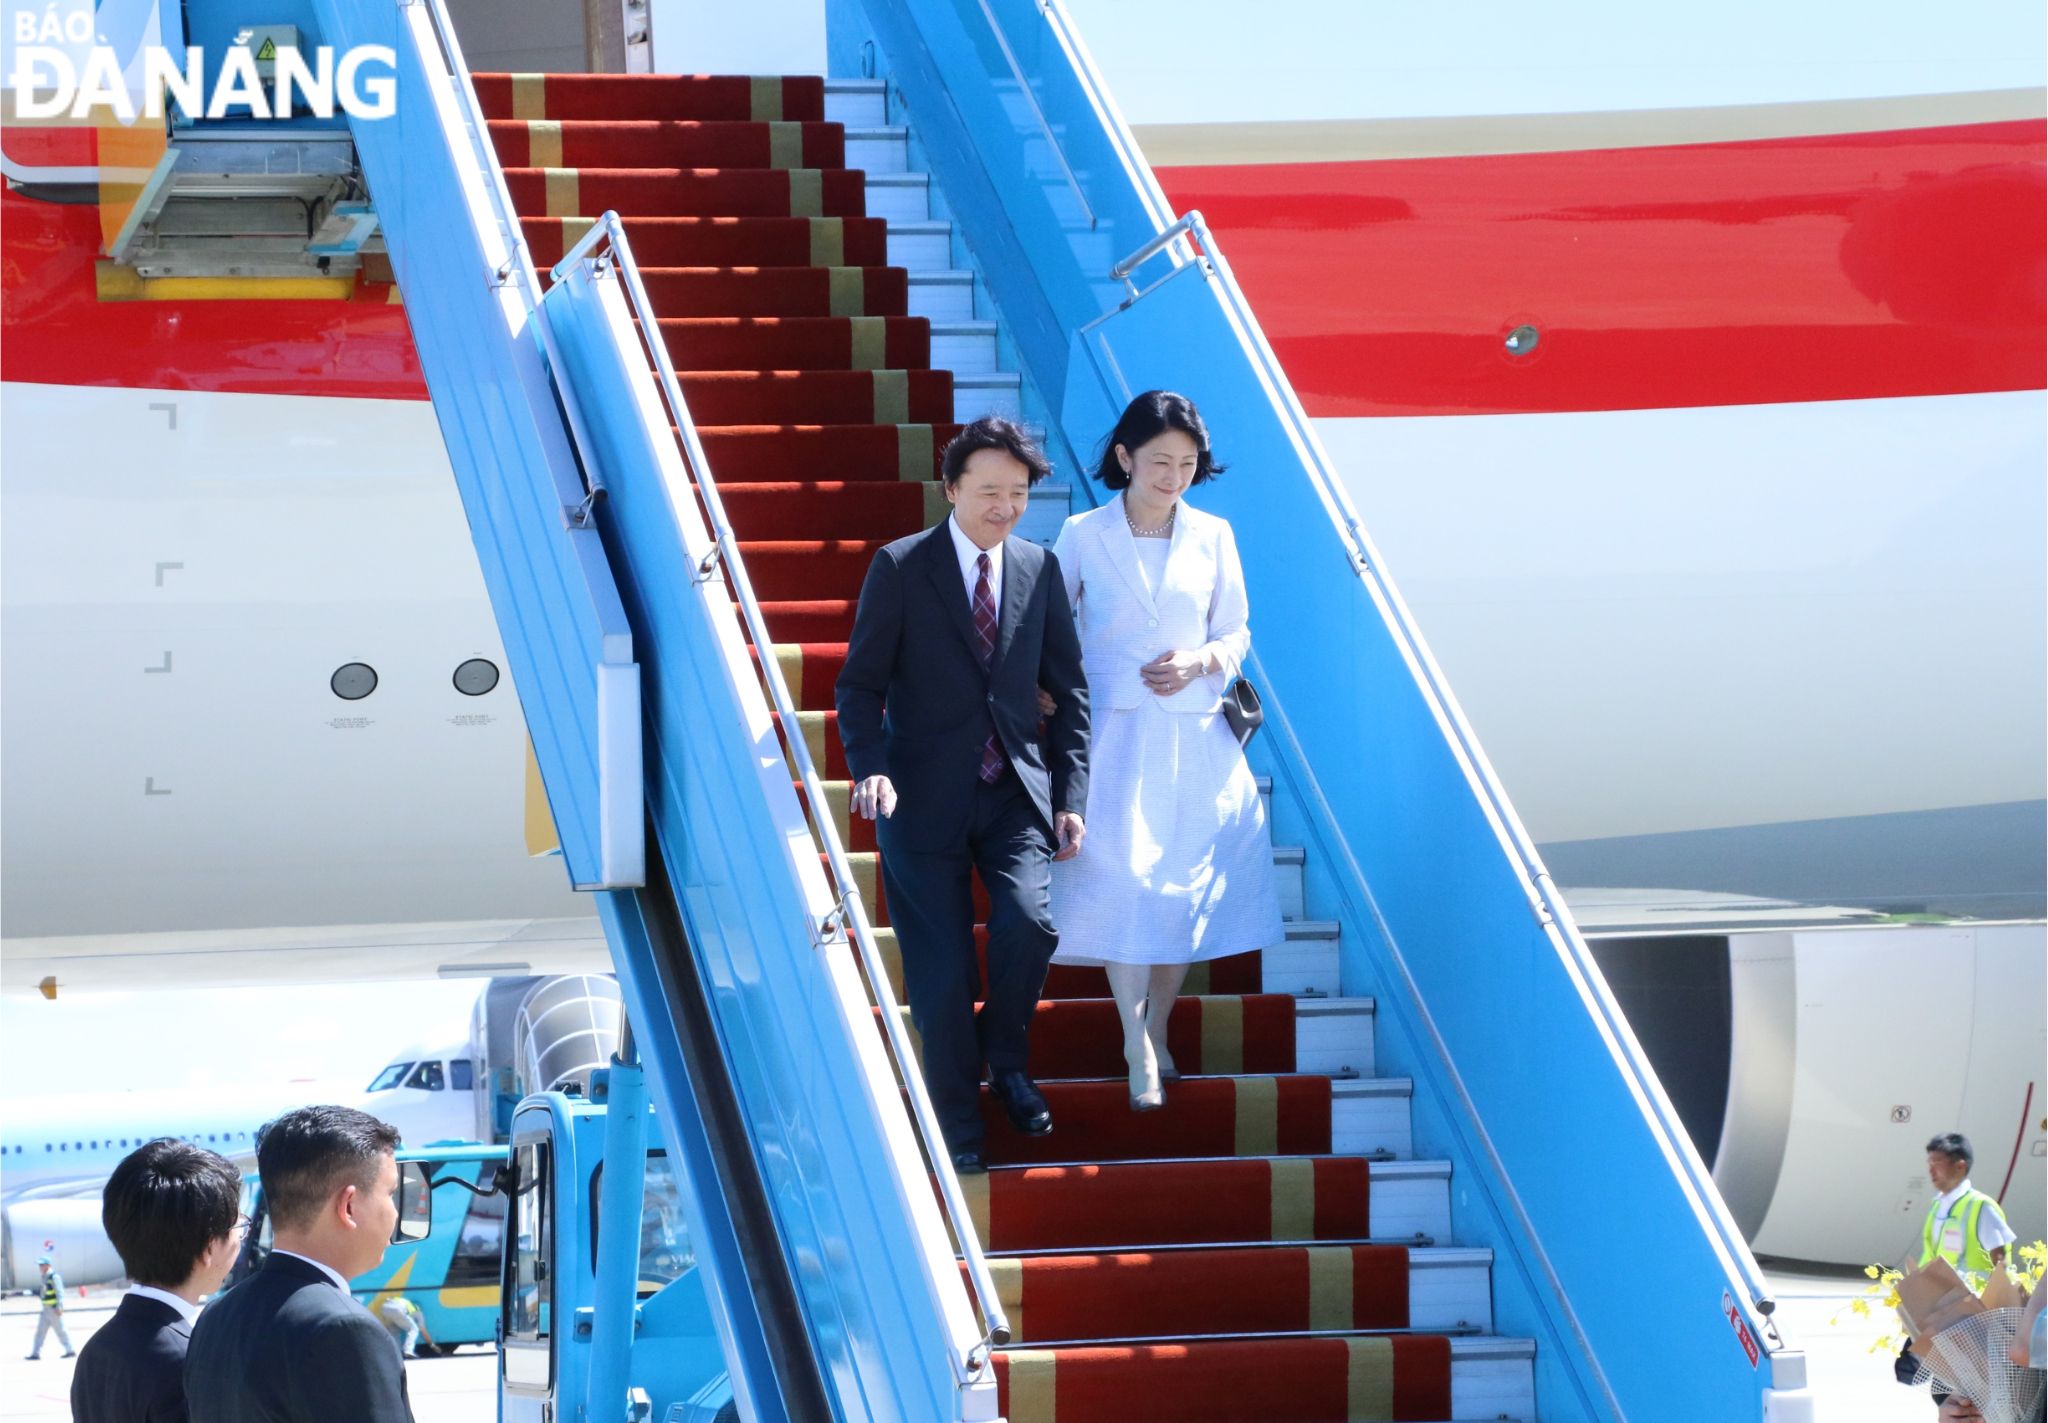 Hoàng Thái tử Nhật Bản bắt đầu thăm thành phố Đà Nẵng